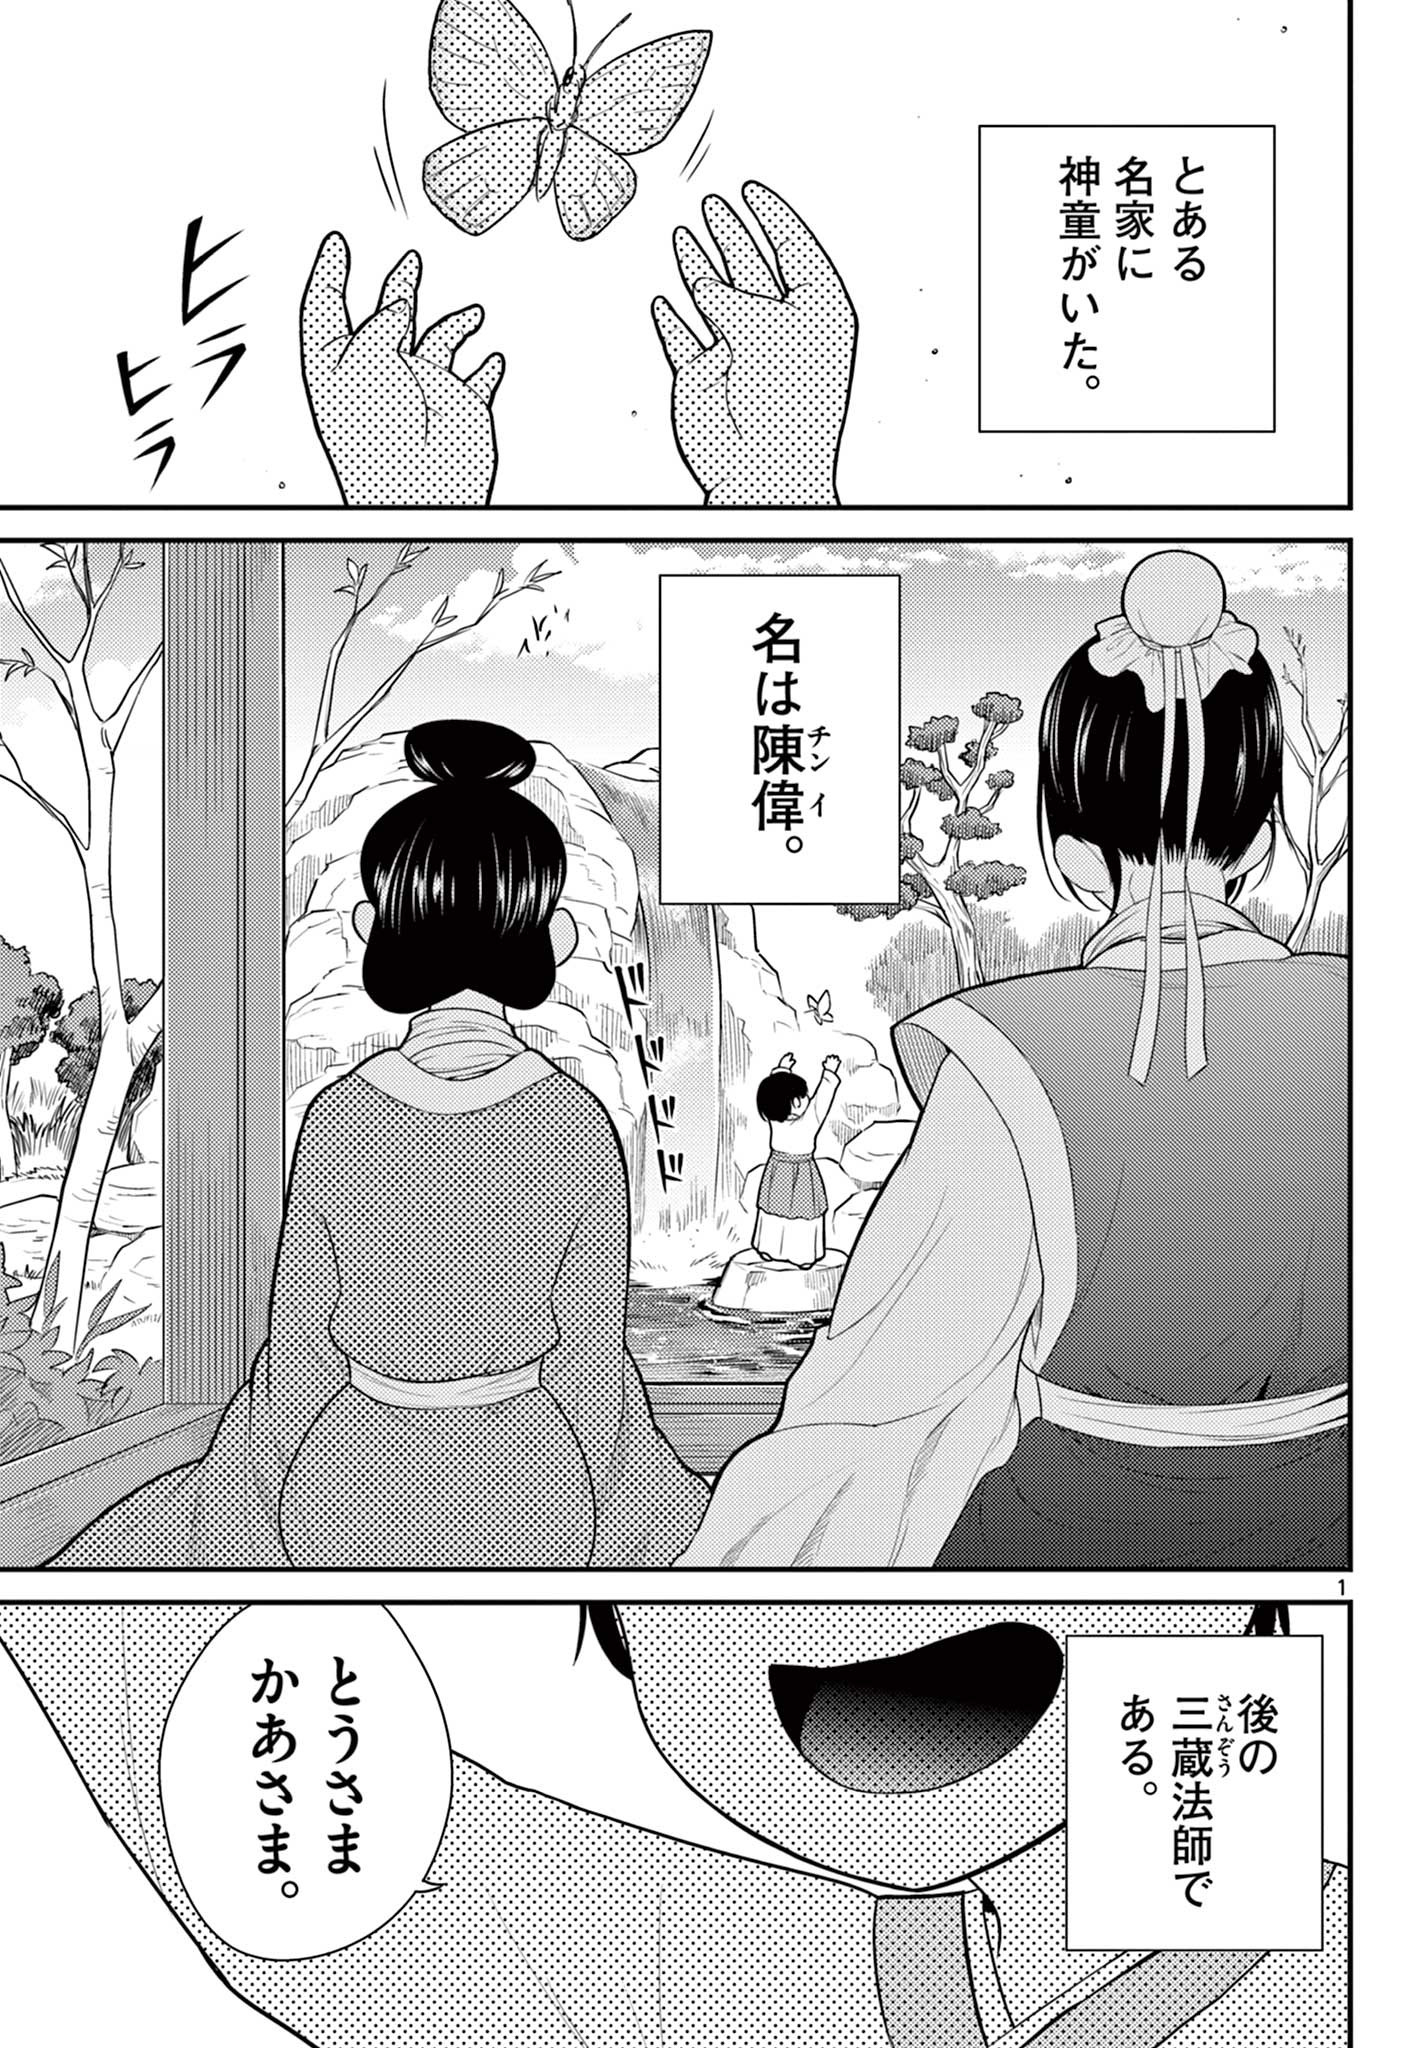 Bonnou Saiyuuki - Chapter 26 - Page 1